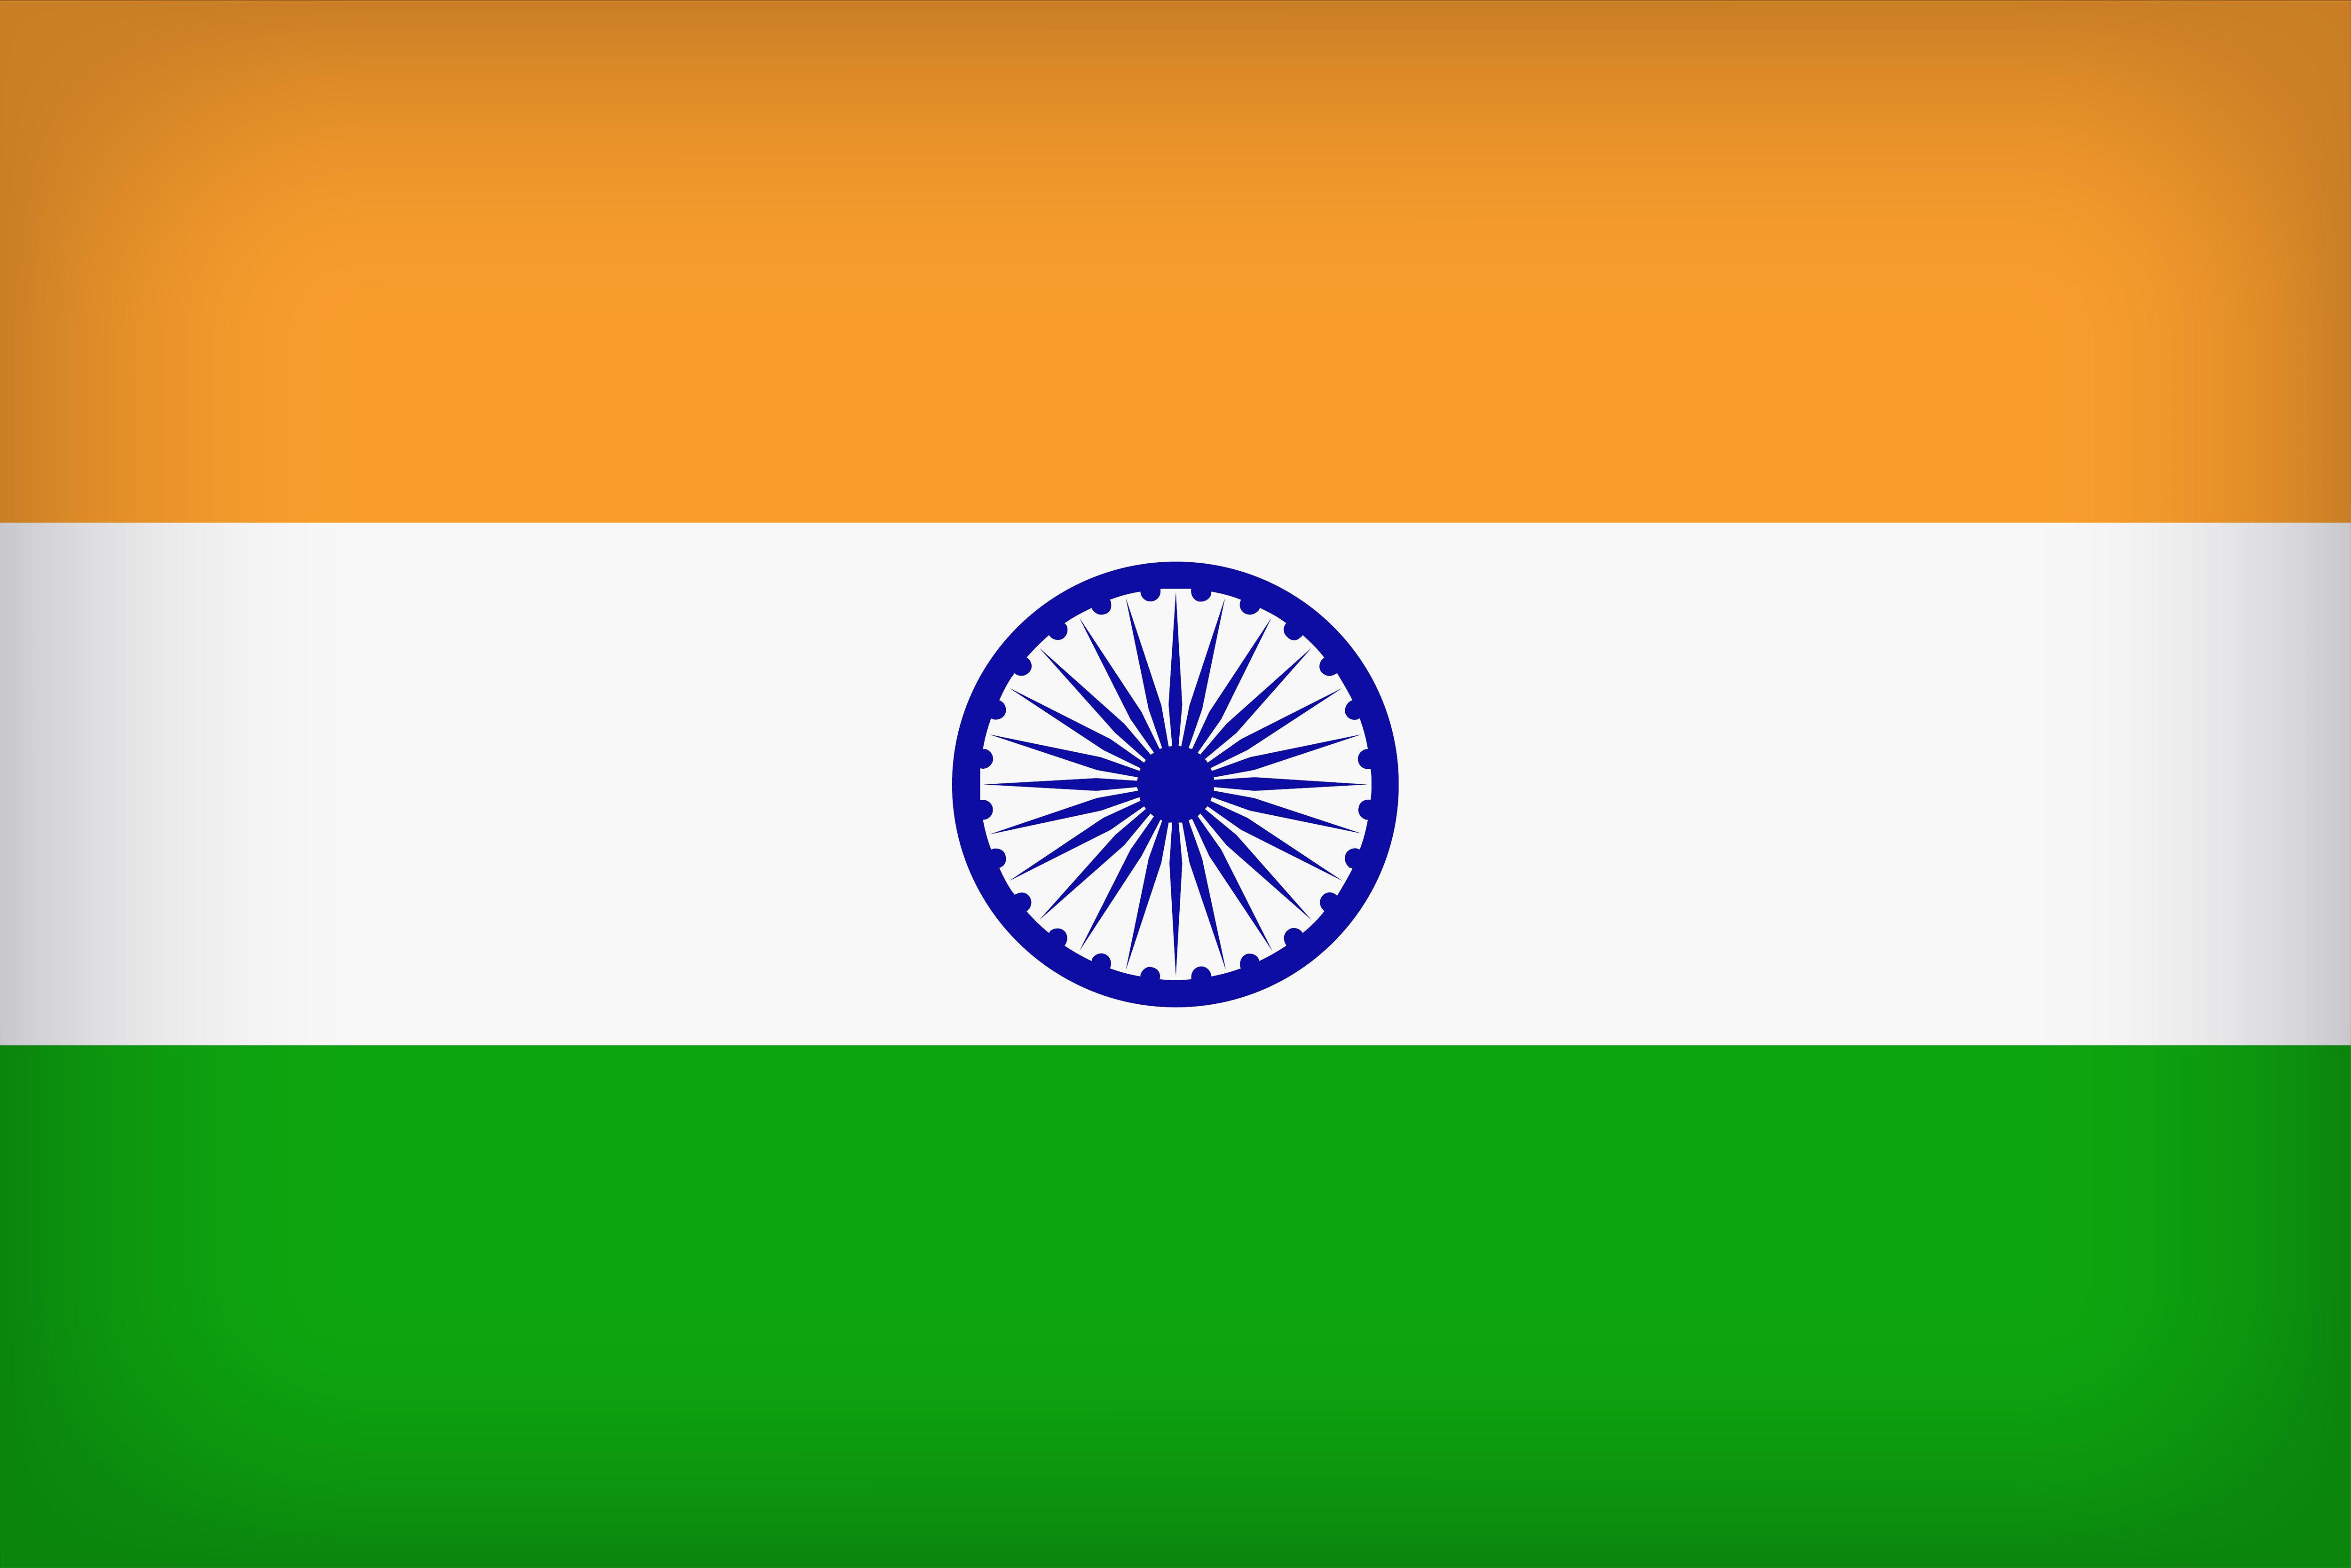 Скачать обои Флаг Индии на телефон бесплатно